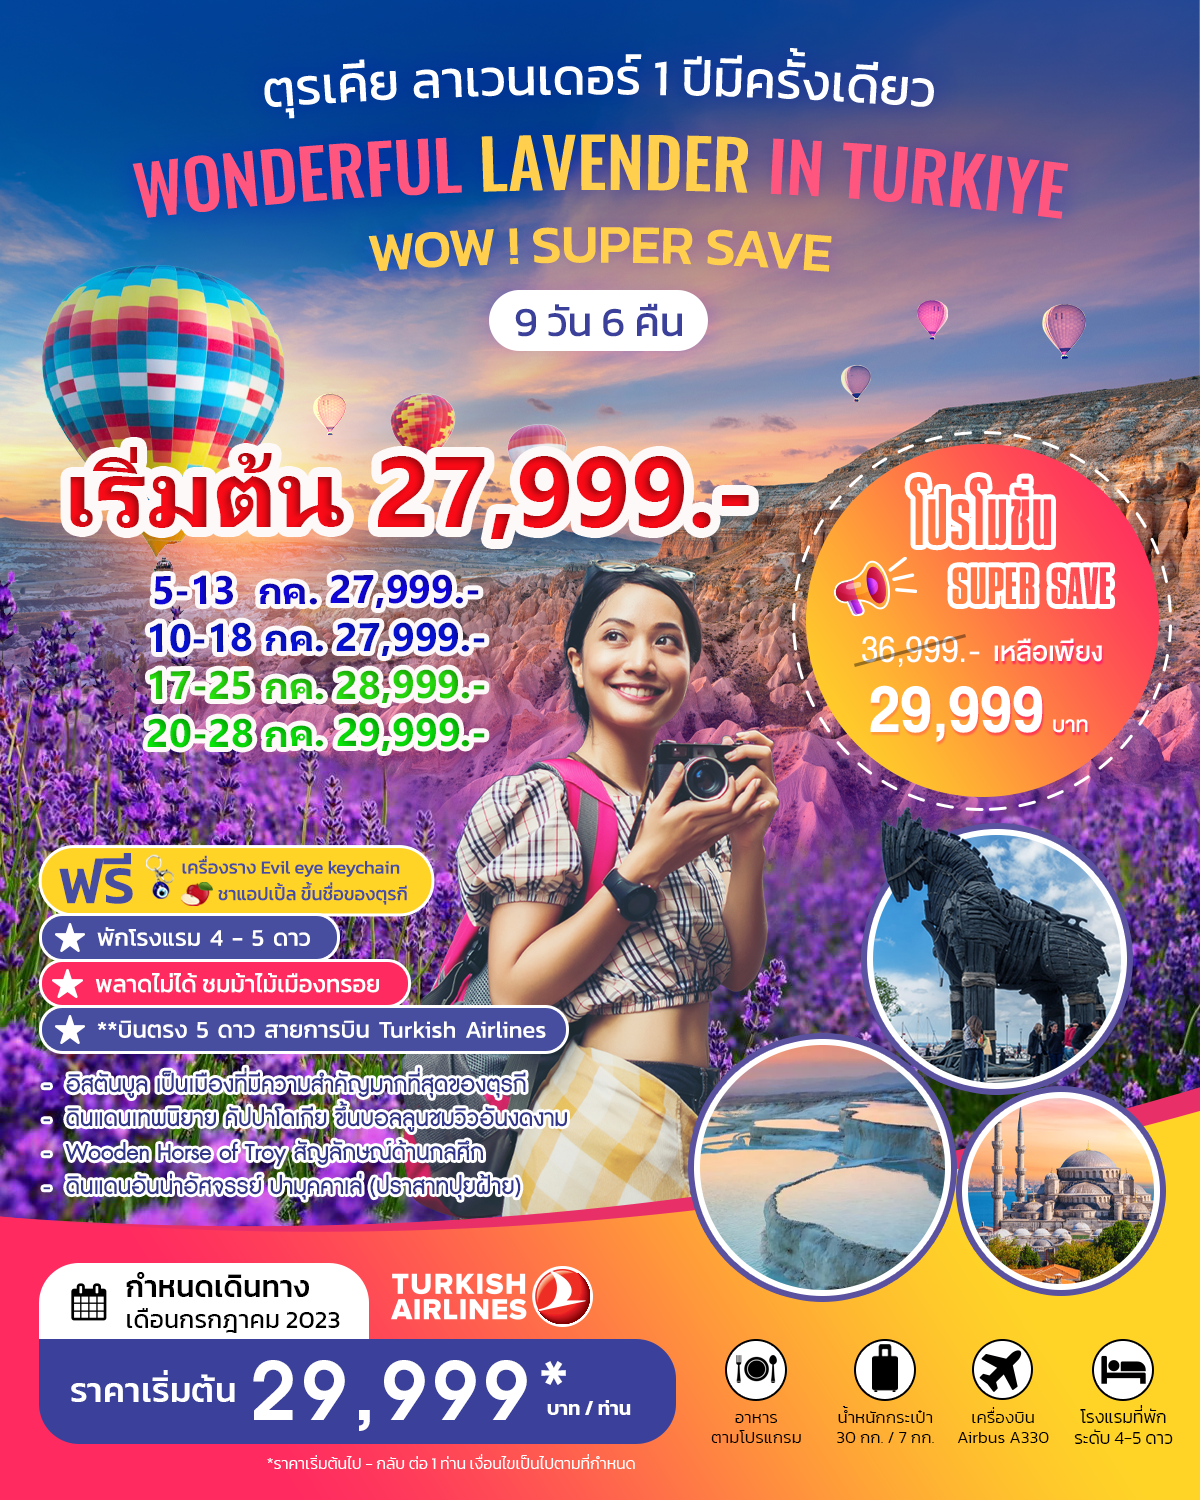 ตุรเคีย ลาเวนเดอร์ WONDERFUL LAVENDER IN TURKIYE  JULY 2023